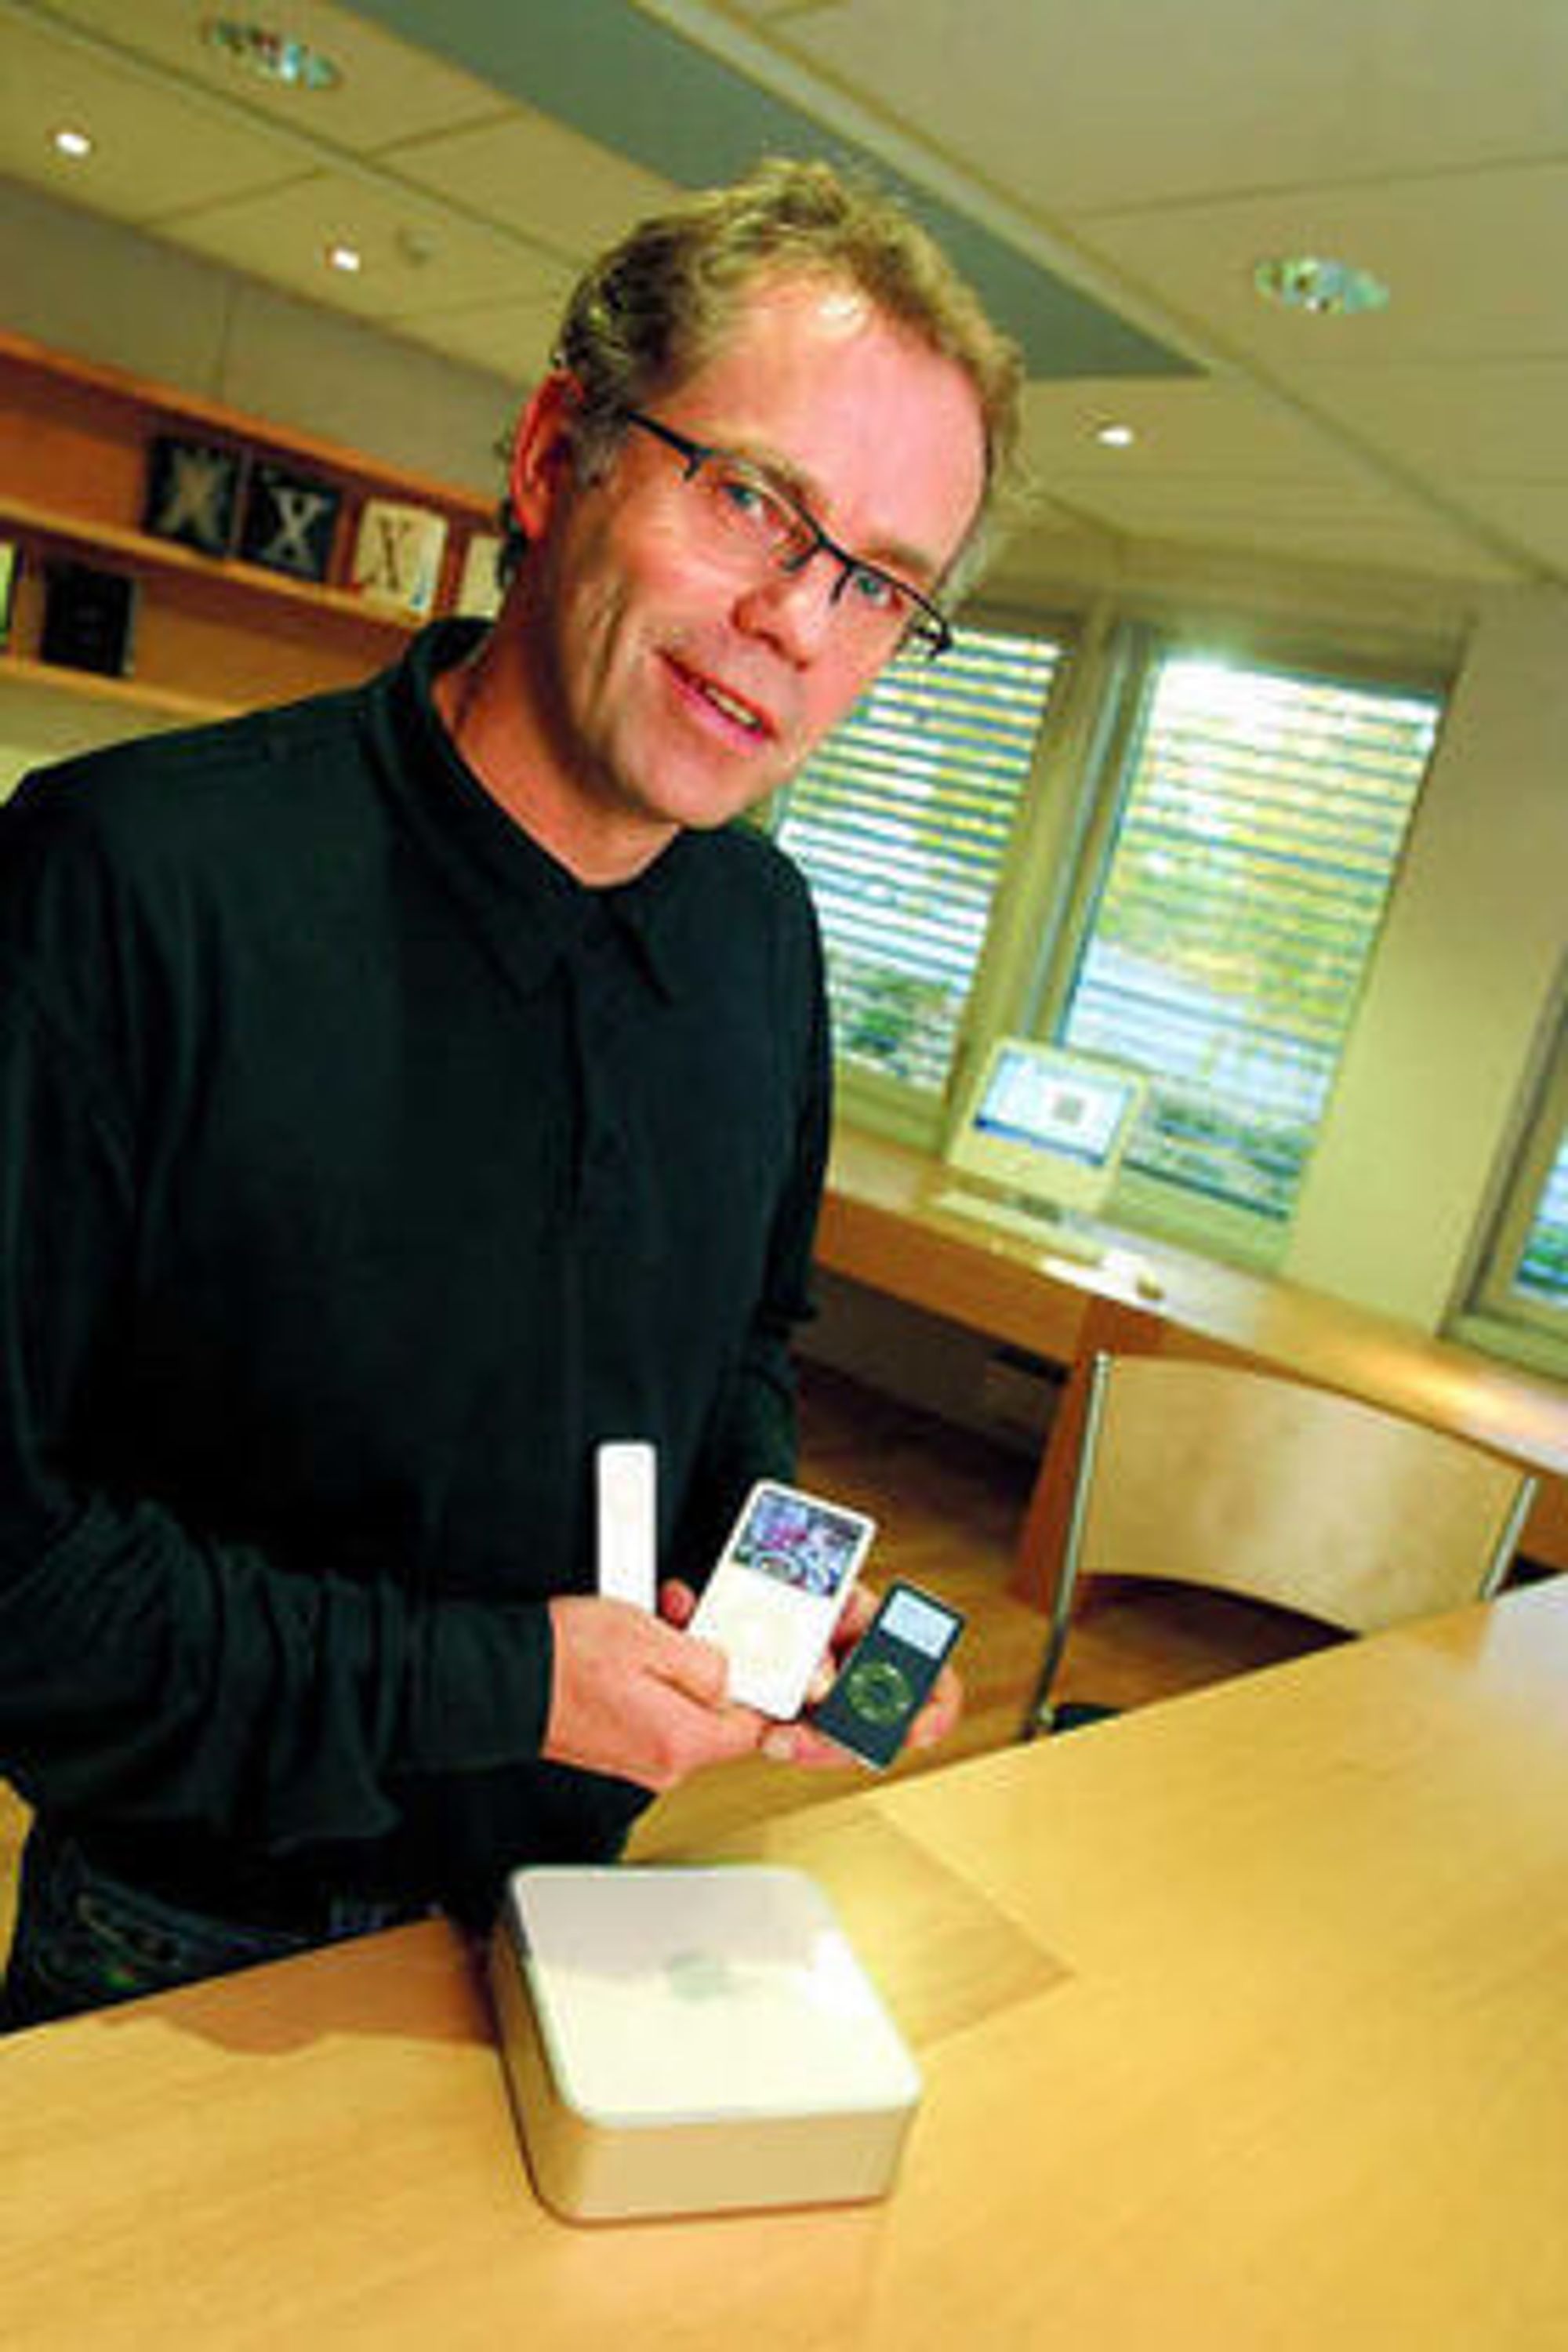 Apples norgessjef Arne Odden i et eldre bilde fra 2006. Den gangen fikk han både lov til å prate med pressen - og la seg avfotografere.